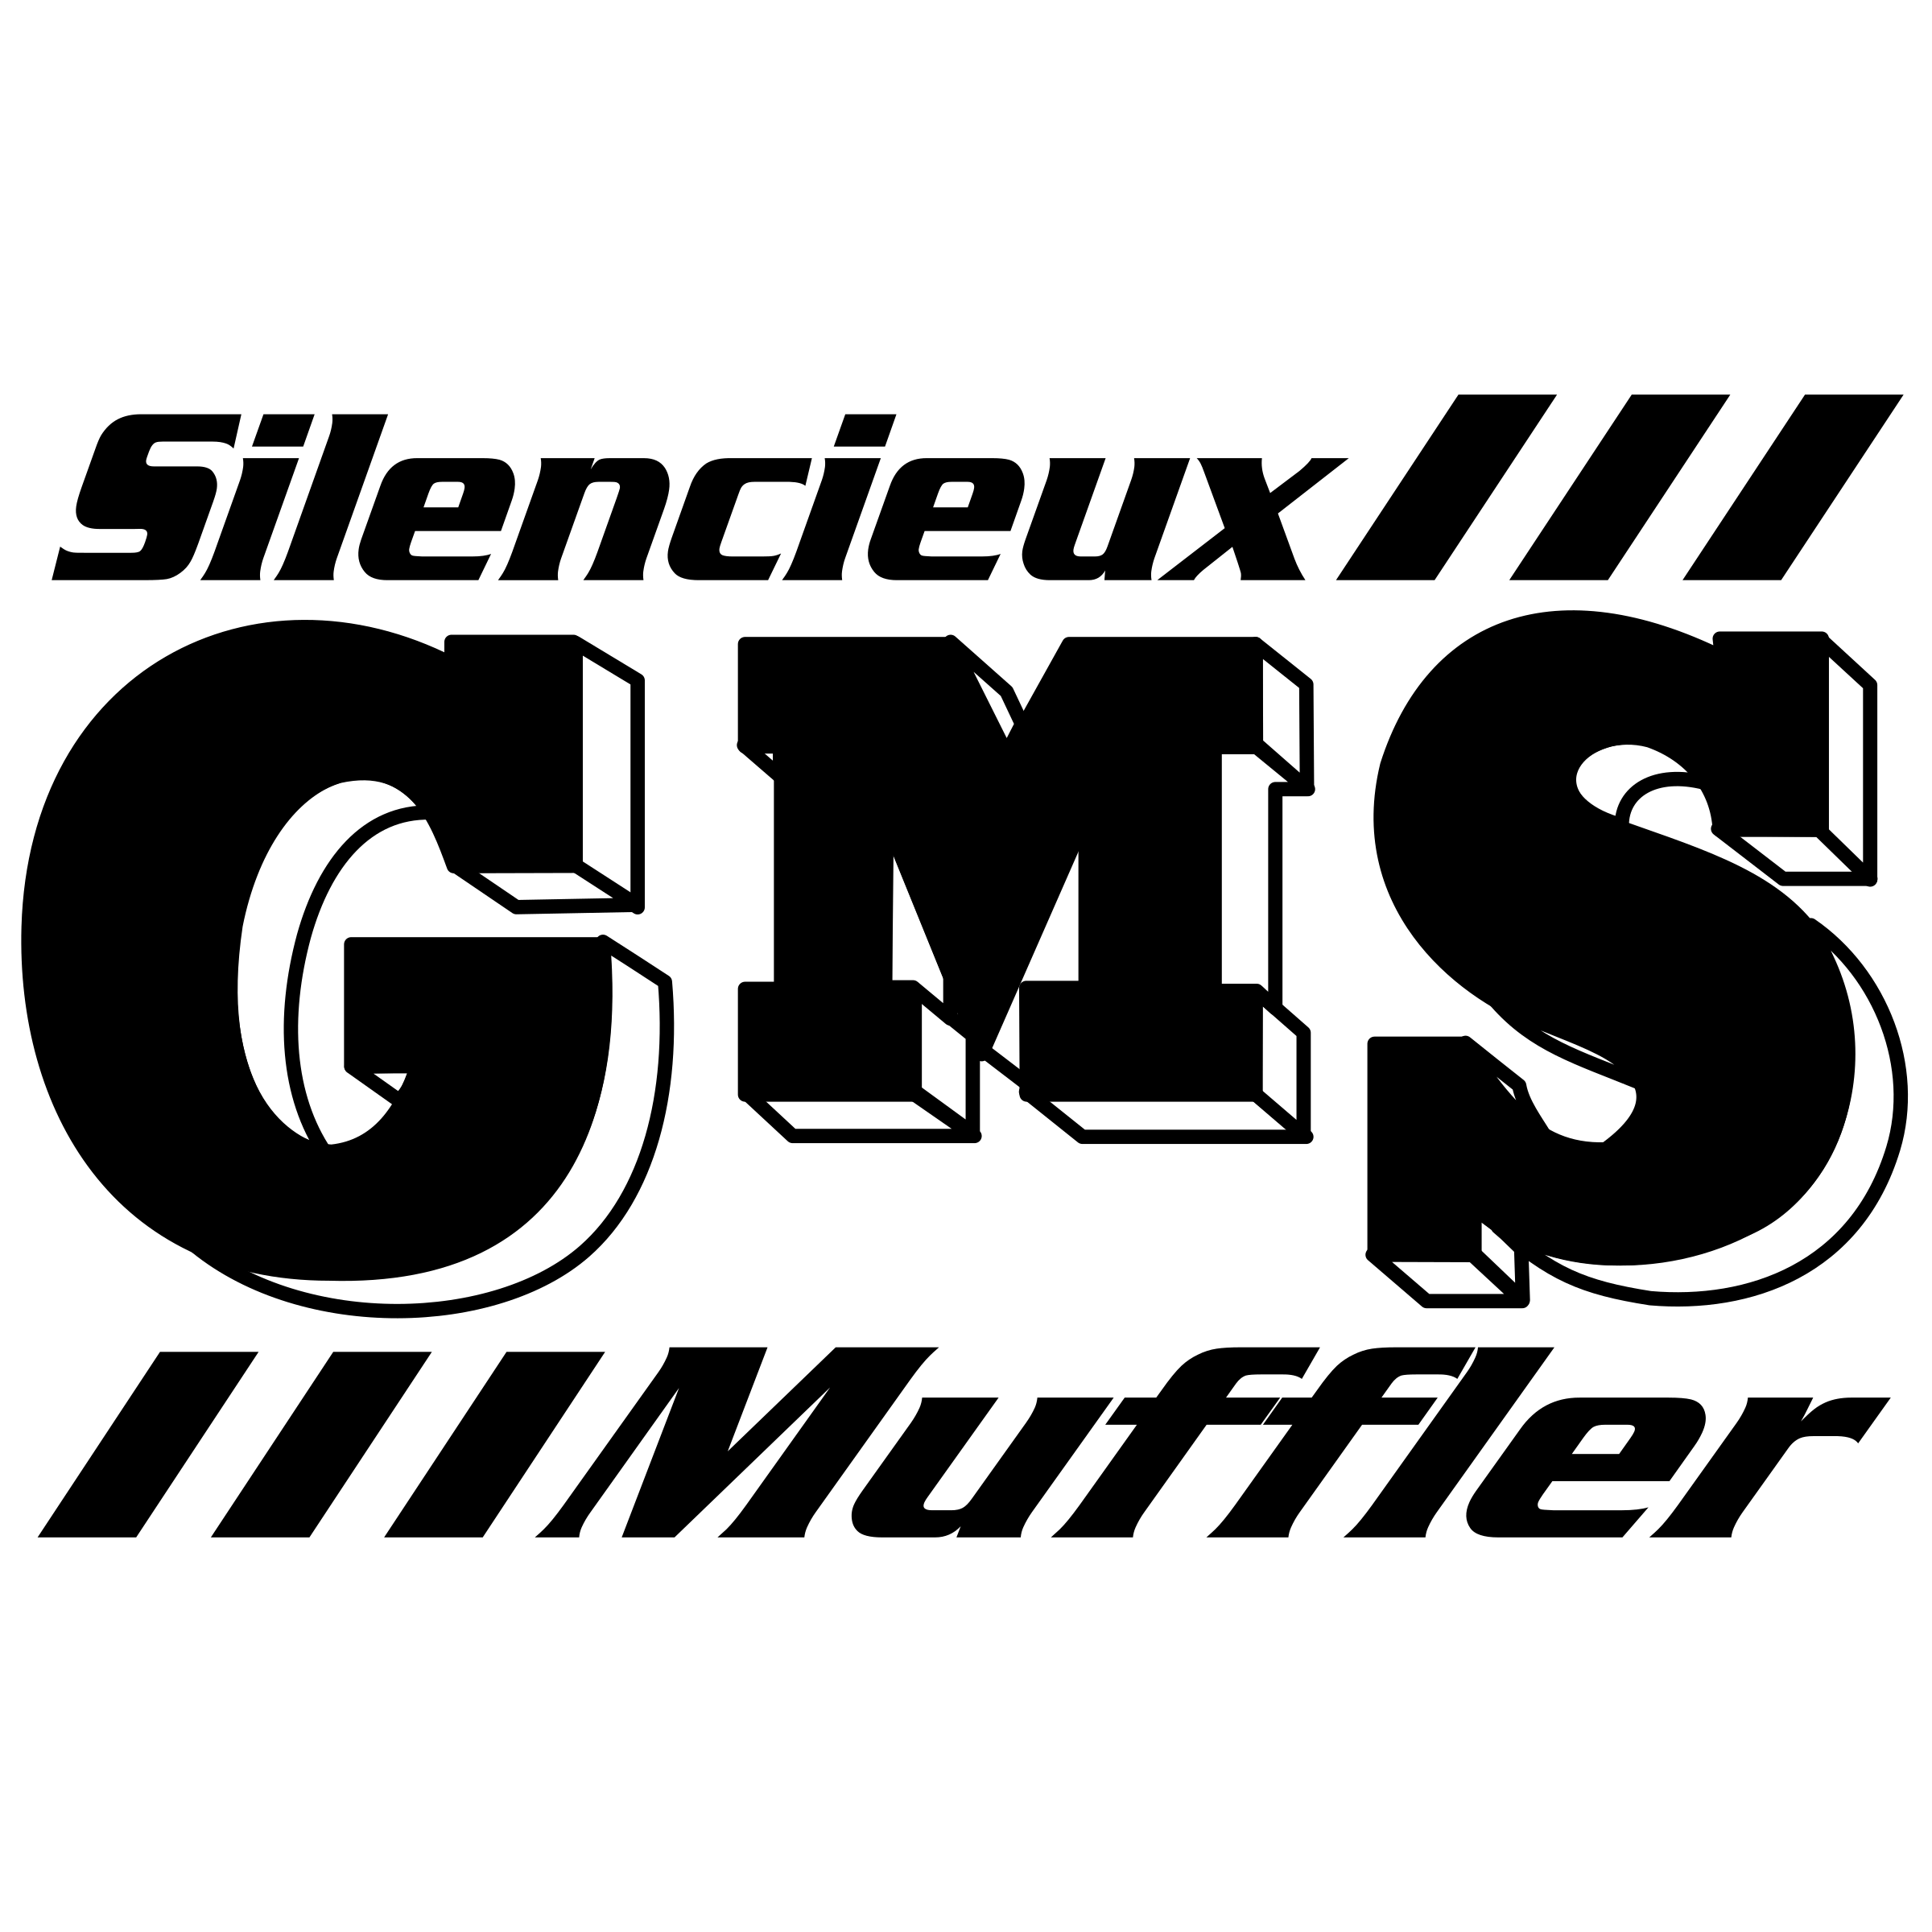 Muffler Logo - Silencieux GMS Muffler Logo PNG Transparent & SVG Vector - Freebie ...